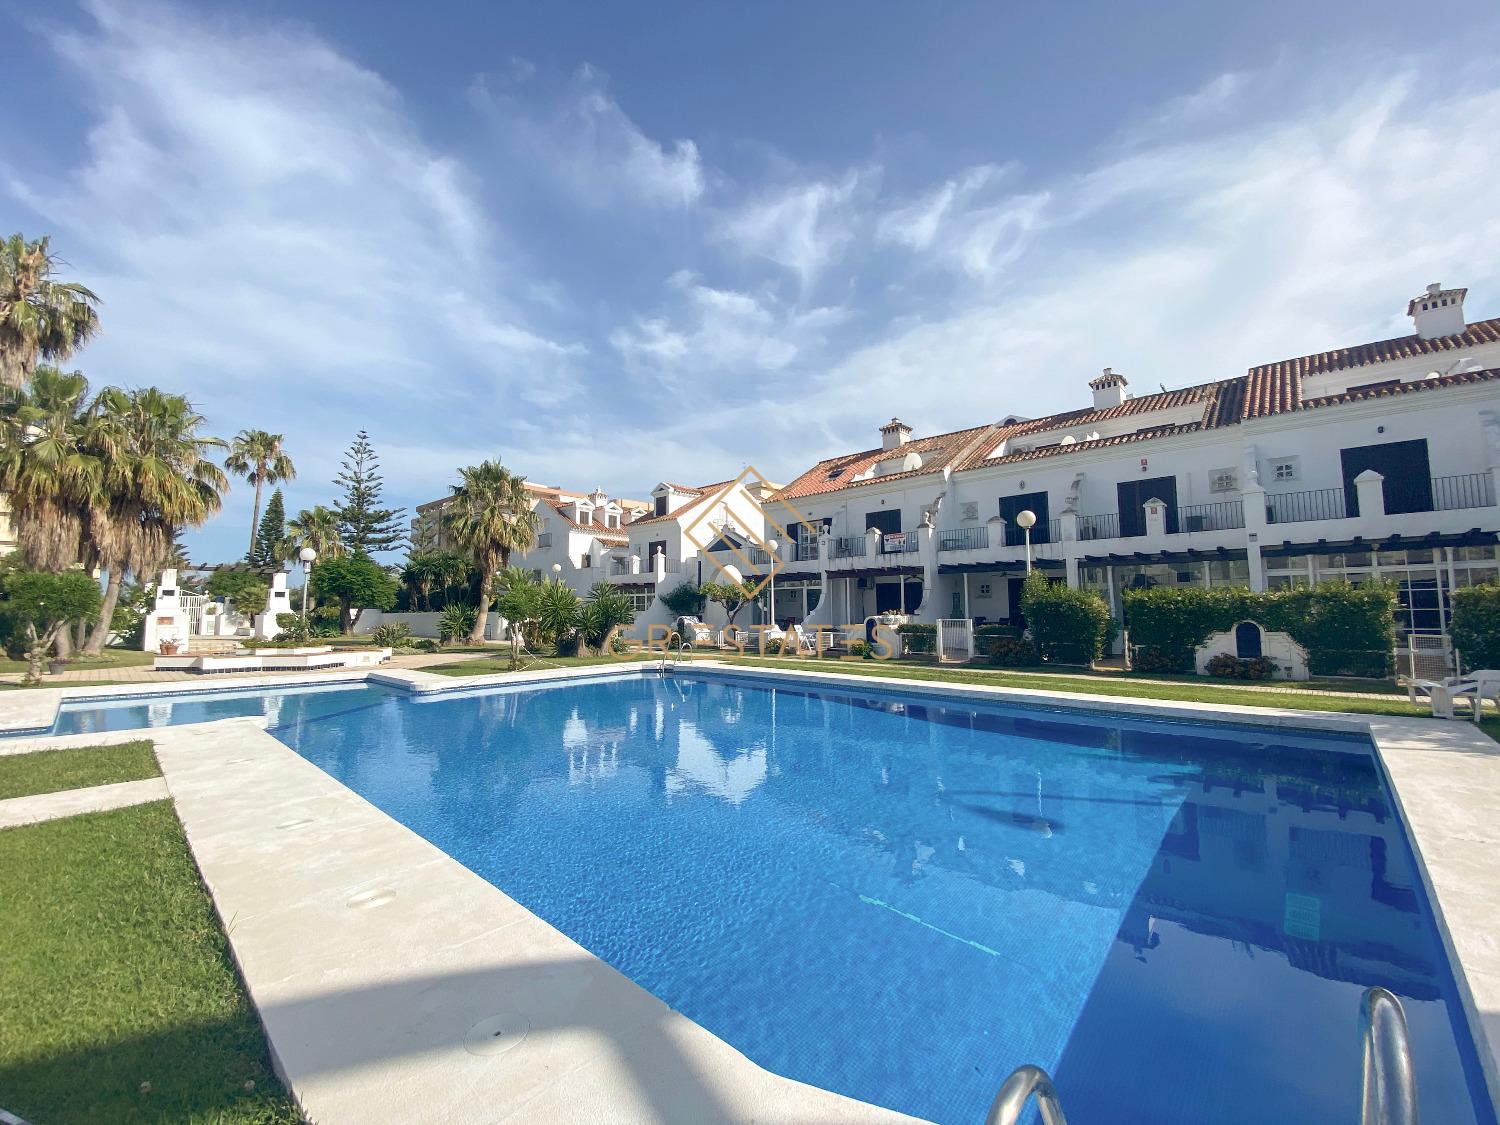 Geweldig appartement met 3 slaapkamers op het strand van Fuengirola, zwembad, airconditioning, wi-fi